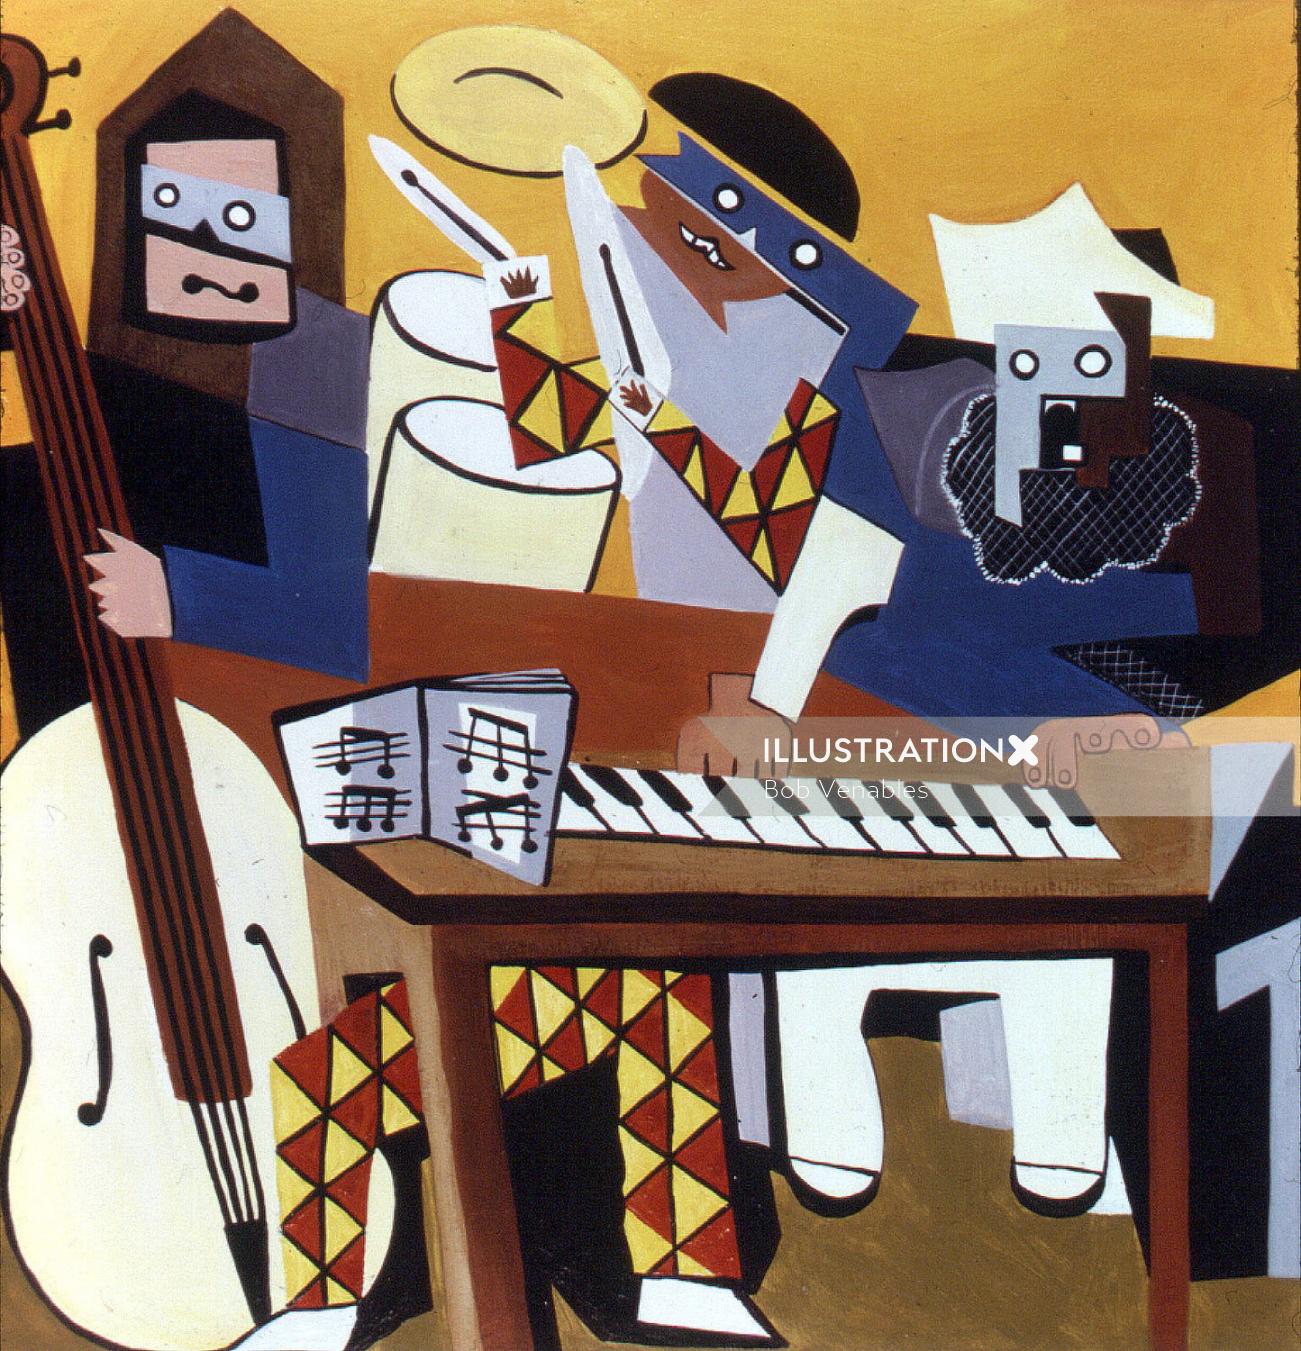 Illustration abstraite de personnes apprenant la musique et la peinture